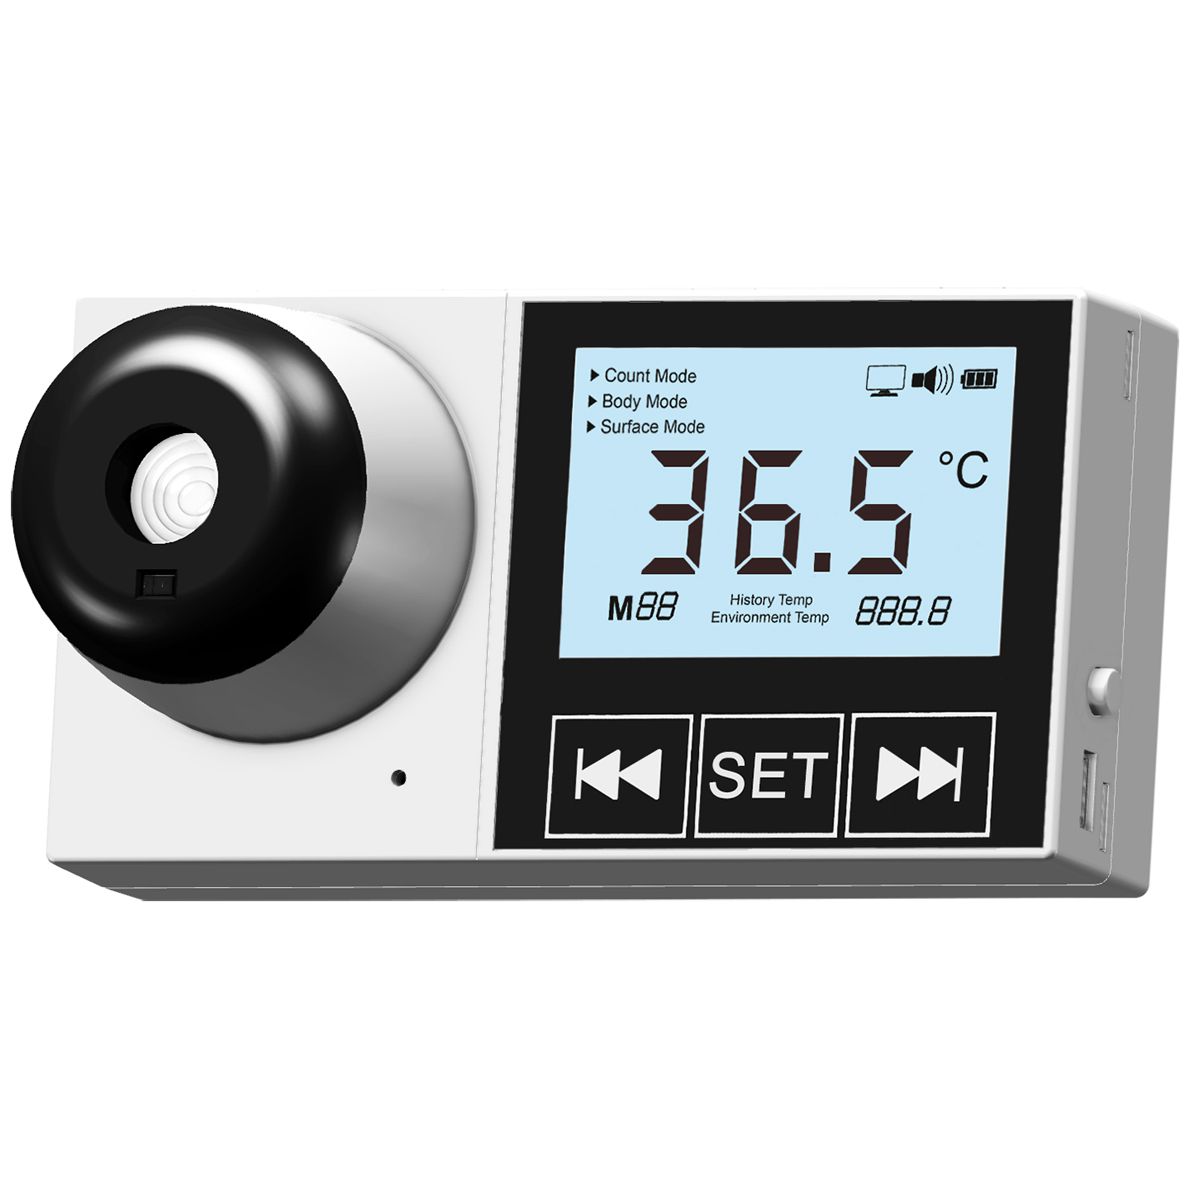 ABVERKAUF: ACE ECT-1000 Infrarot-Thermometer - zur Wandmontage - digital & kontaktlos Temperaturen messen - deutsche Version (°C)